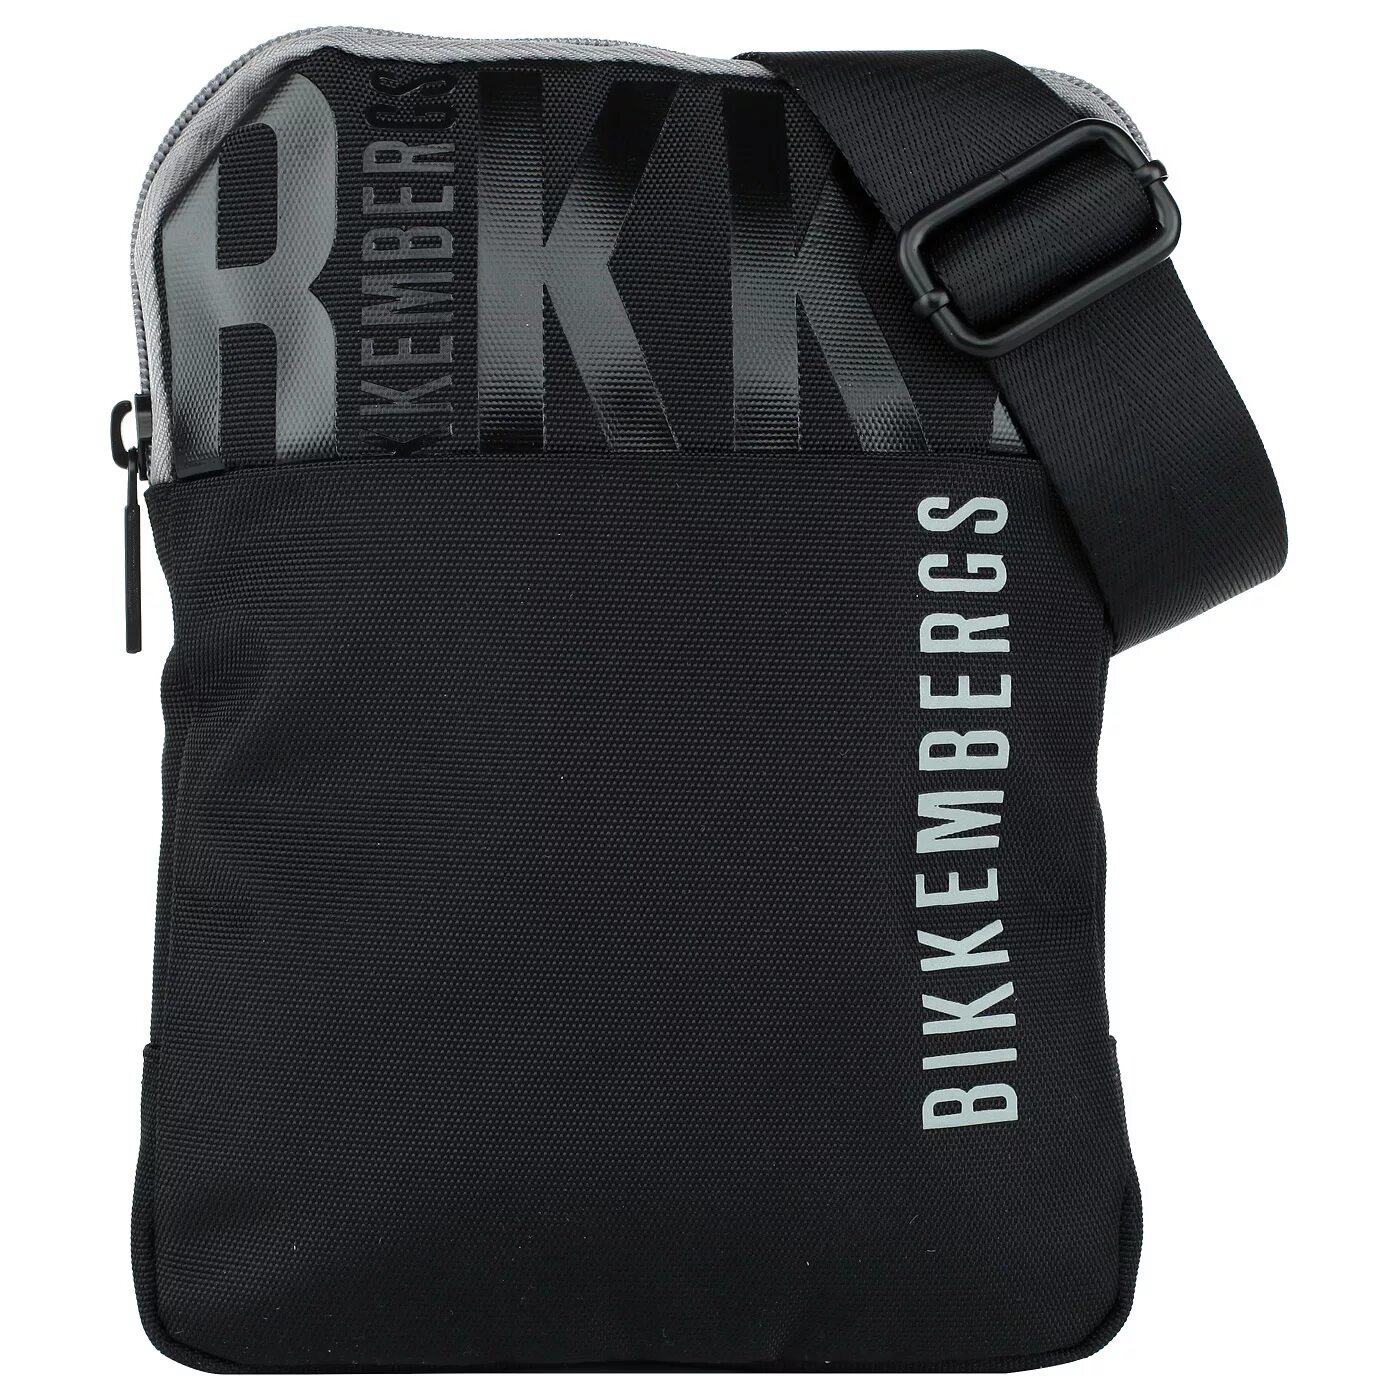 Сумка Биккембергс мужская через плечо. Bikkembergs сумка через плечо. Bikkembergs сумка мужская через плечо. Биккембергс поясная сумка мужская.